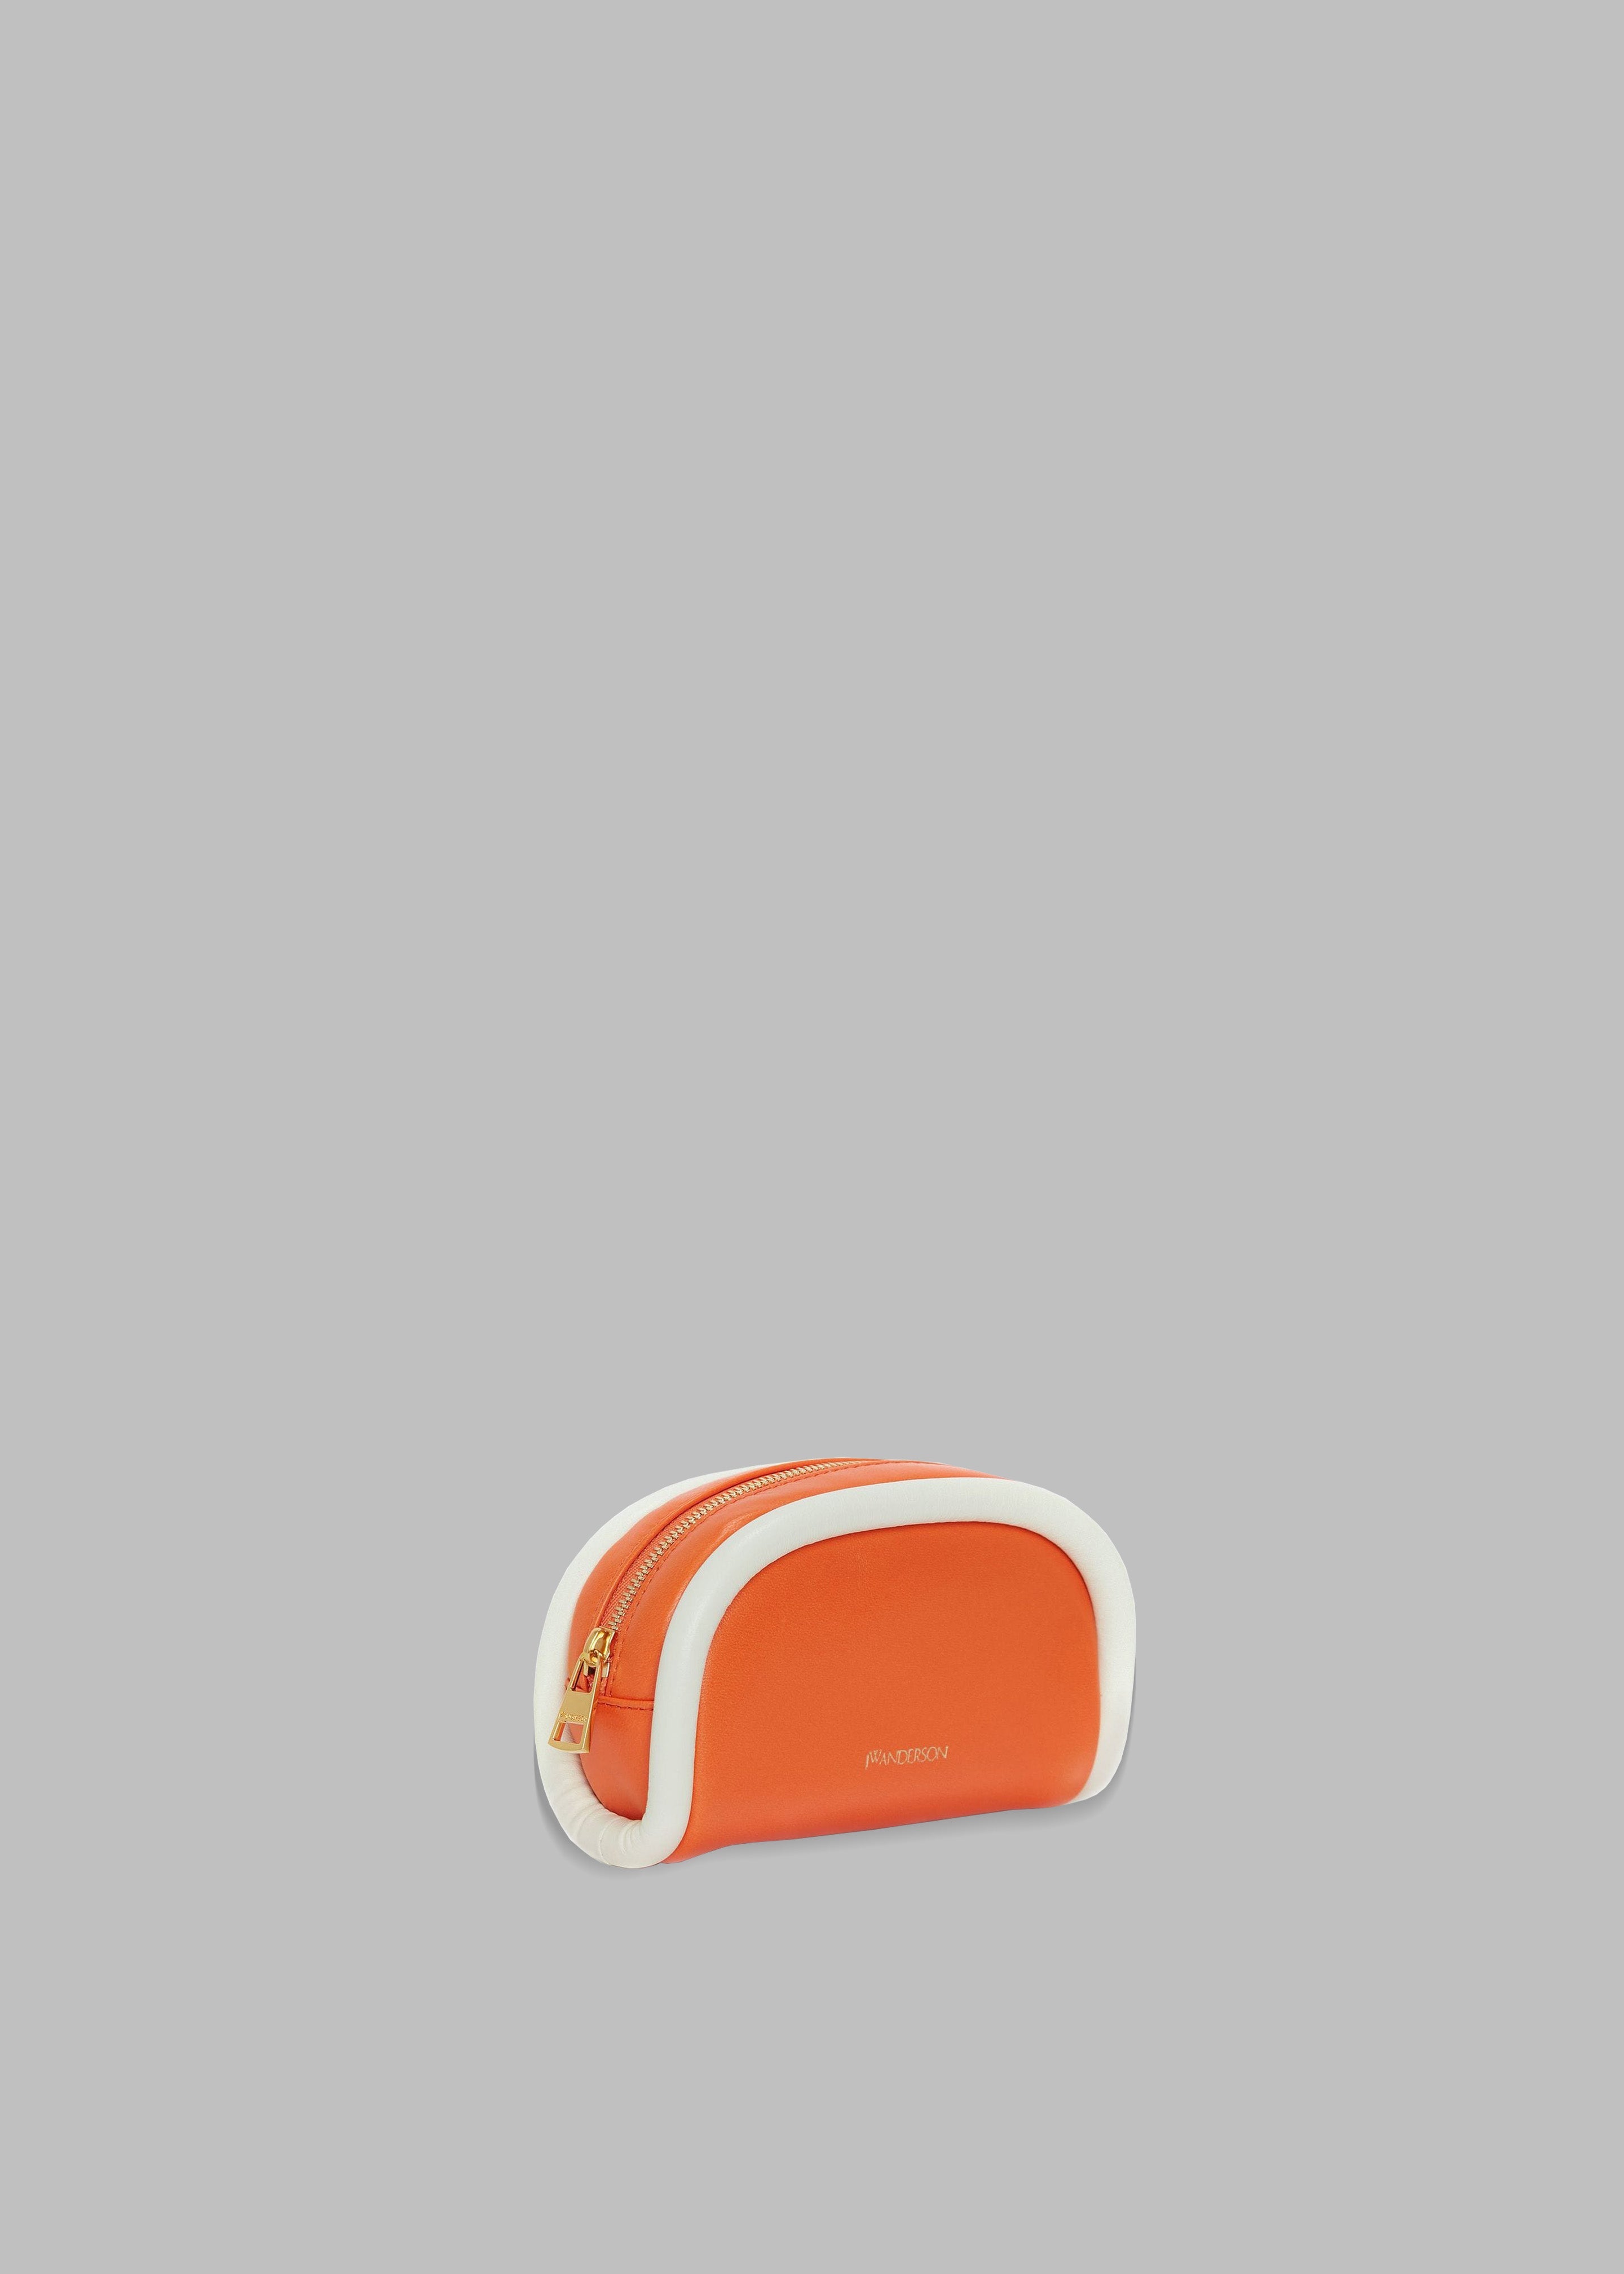 JW Anderson Small Leather Bumper-Pouch - Orange/White - 3